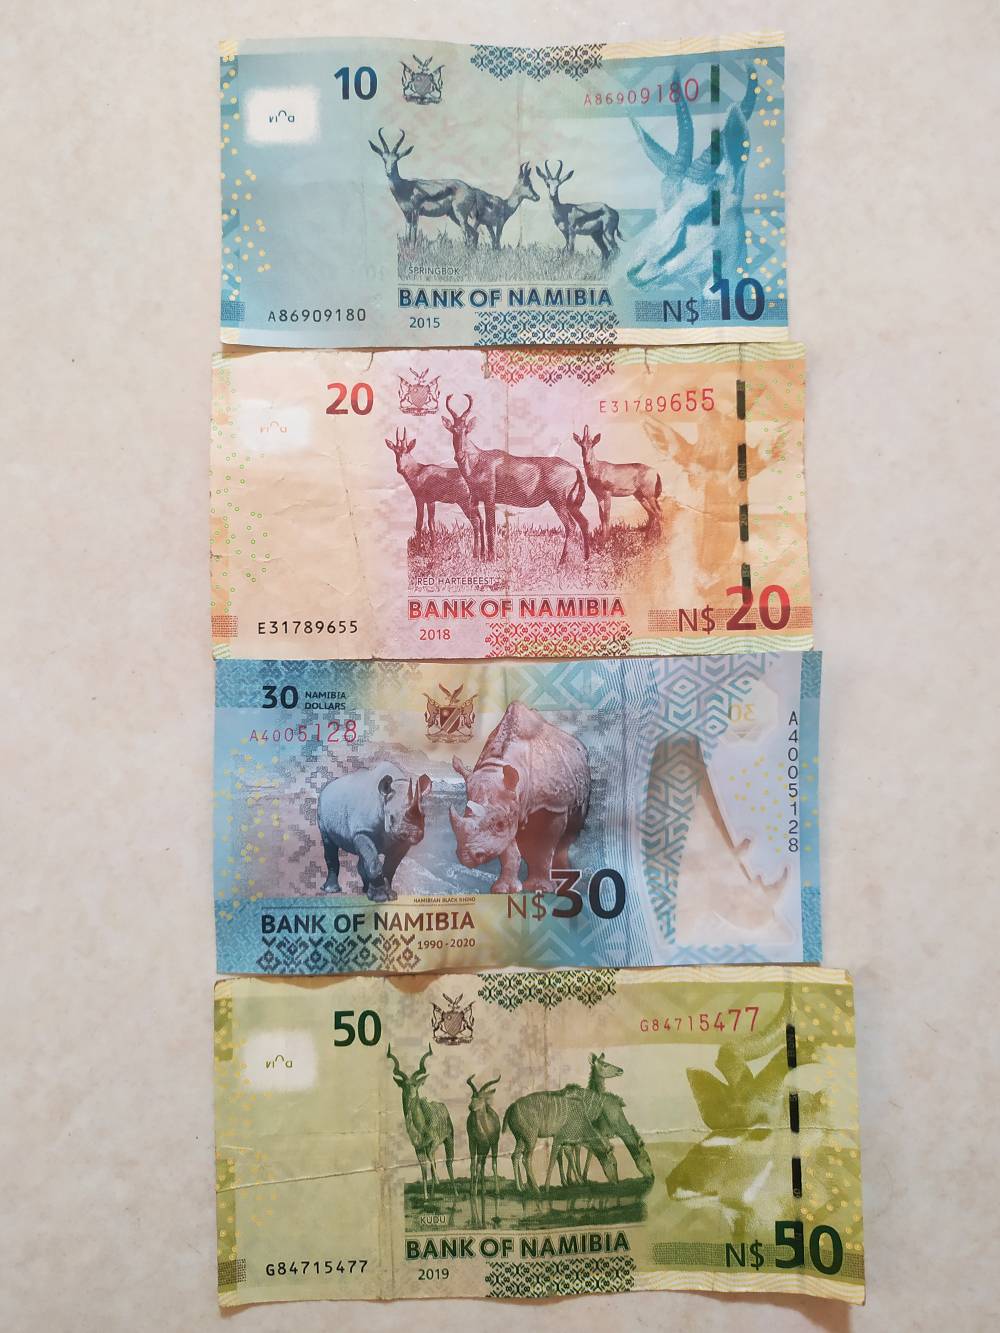 Когда я жил в Намибии, намибийский доллар стоил 4,6—4,8 <span class=ruble>Р</span>. В конце февраля курс рубля сильно упал. Я прочувствовал это на себе уже после того, как улетел из Намибии в ЮАР: все стало дороже в полтора раза